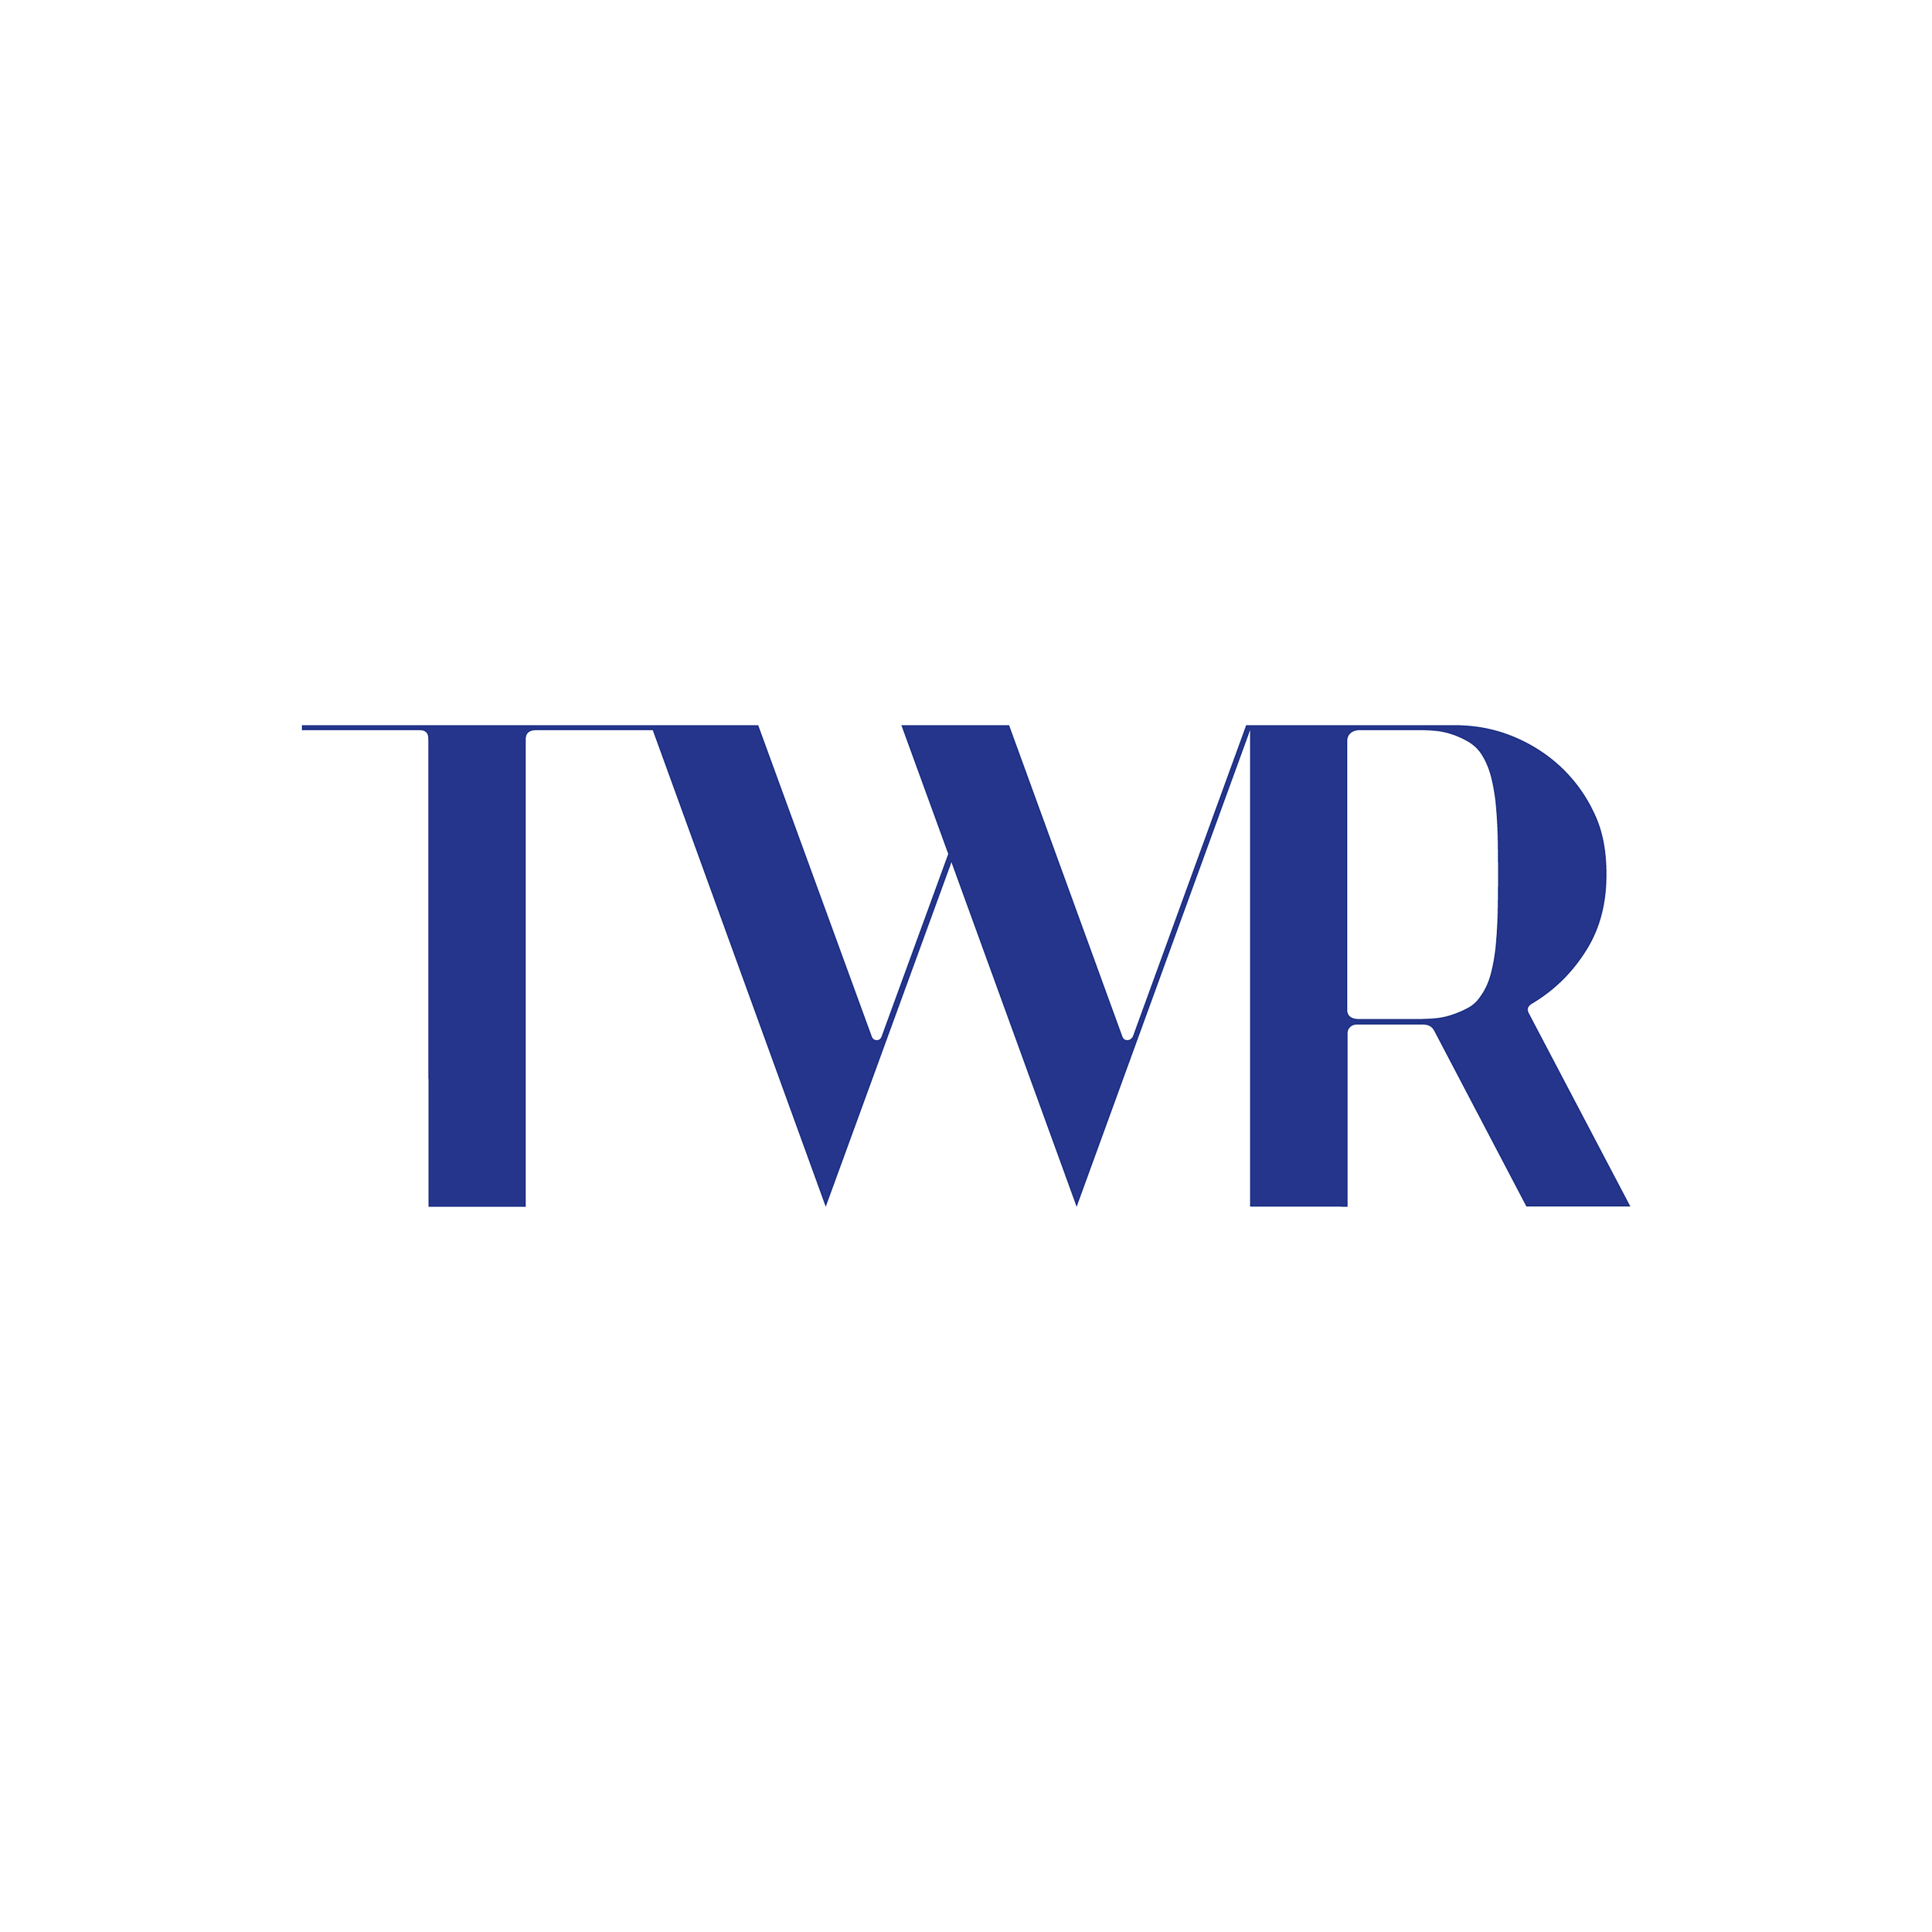 Das Logo der twr GmbH